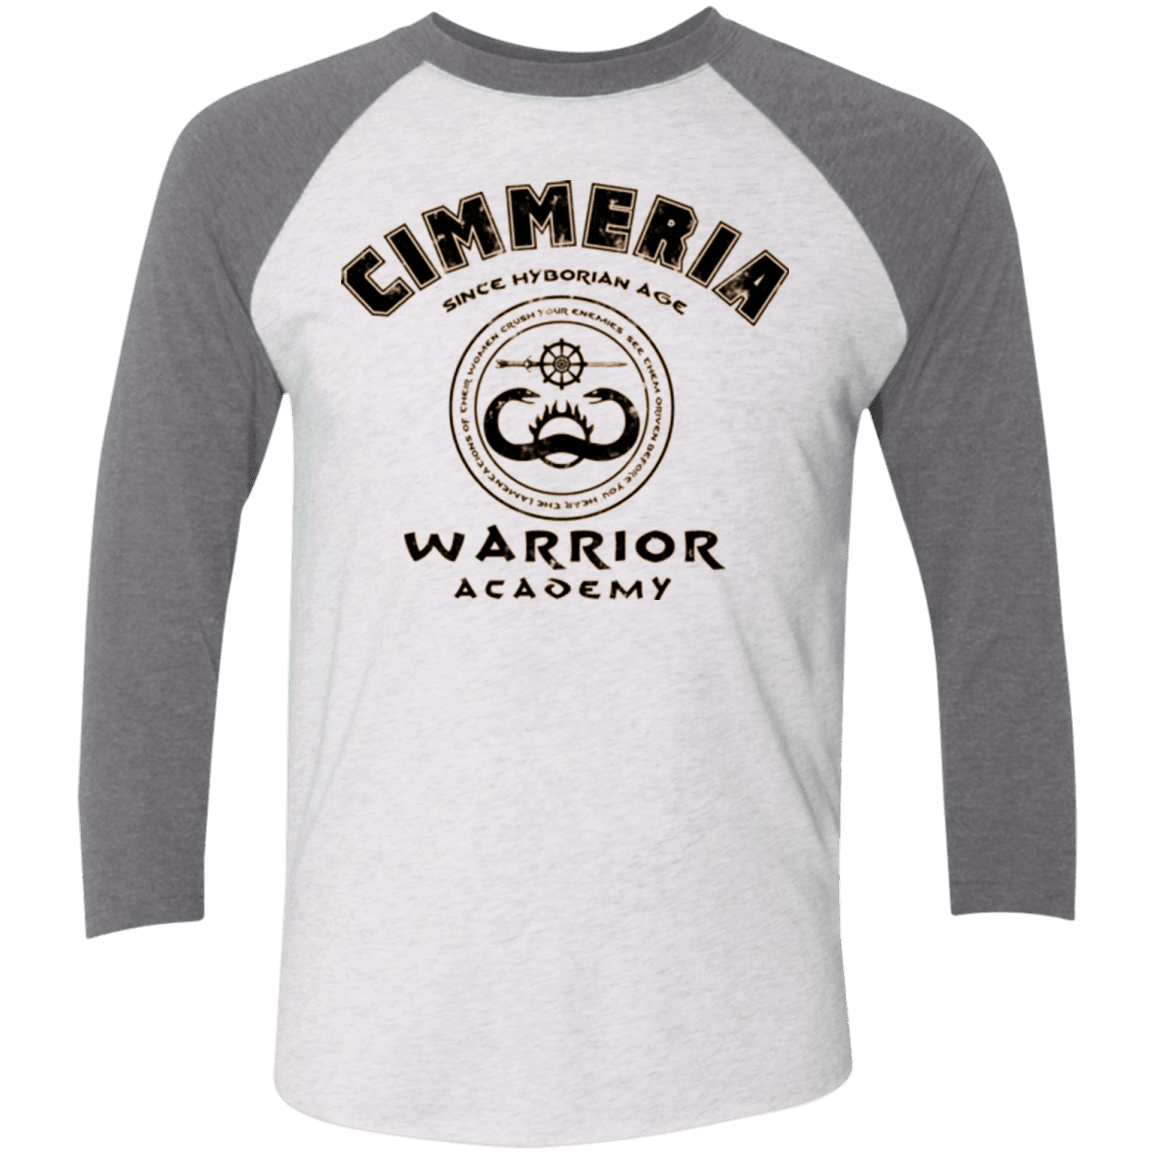 T-Shirts Heather White/Premium Heather / X-Small Crimmeria Warrior academy Men's Triblend 3/4 Sleeve